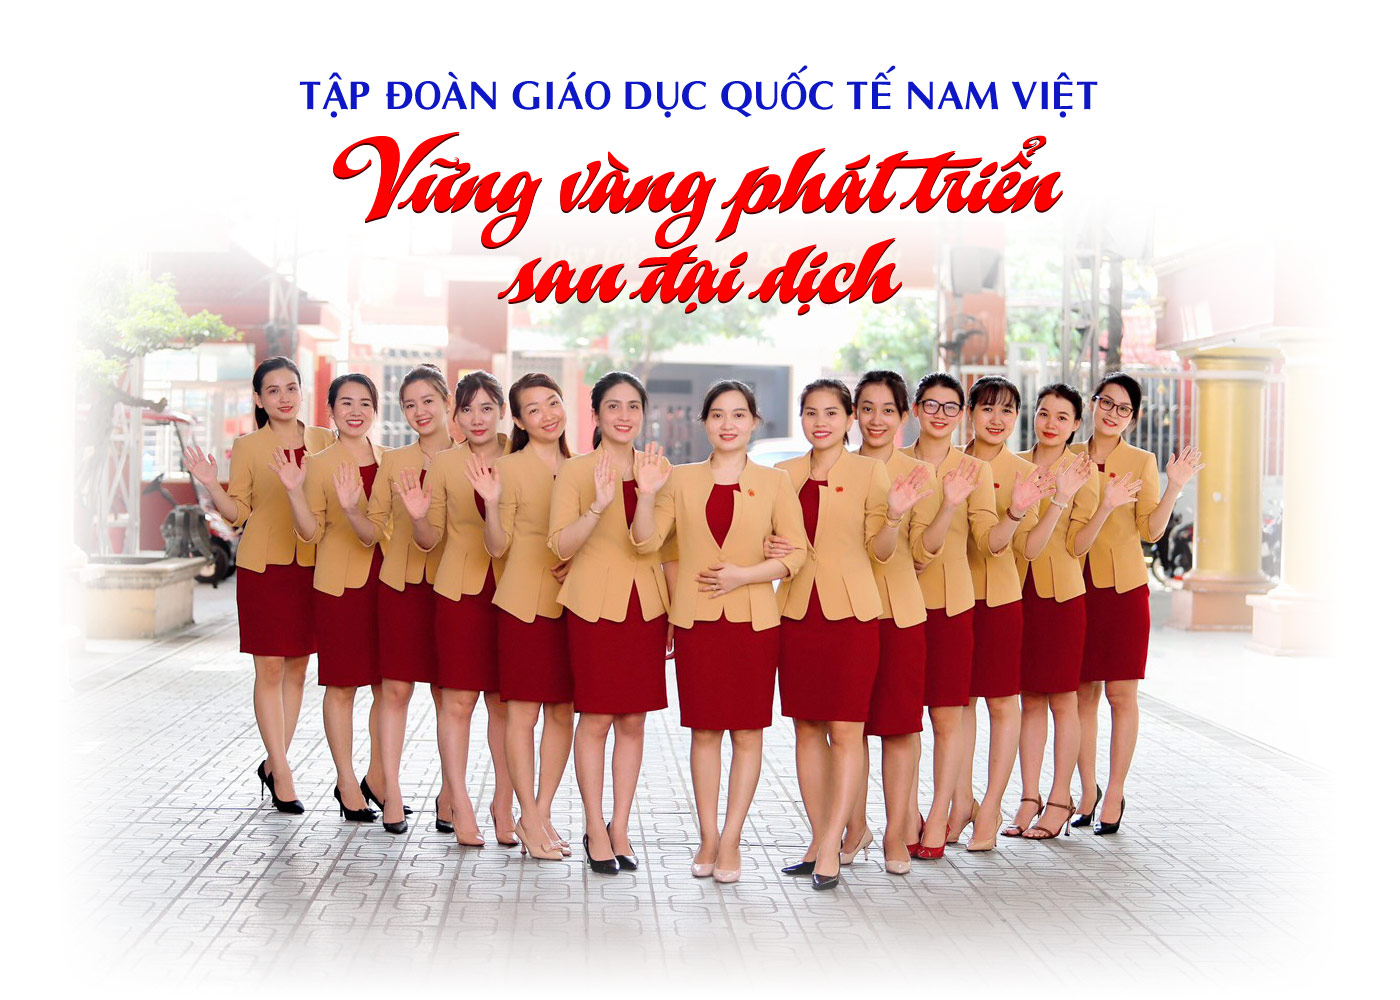 Tập đoàn giáo dục quốc tế Nam Việt vững vàng phát triển sau đại dịch - ảnh 1